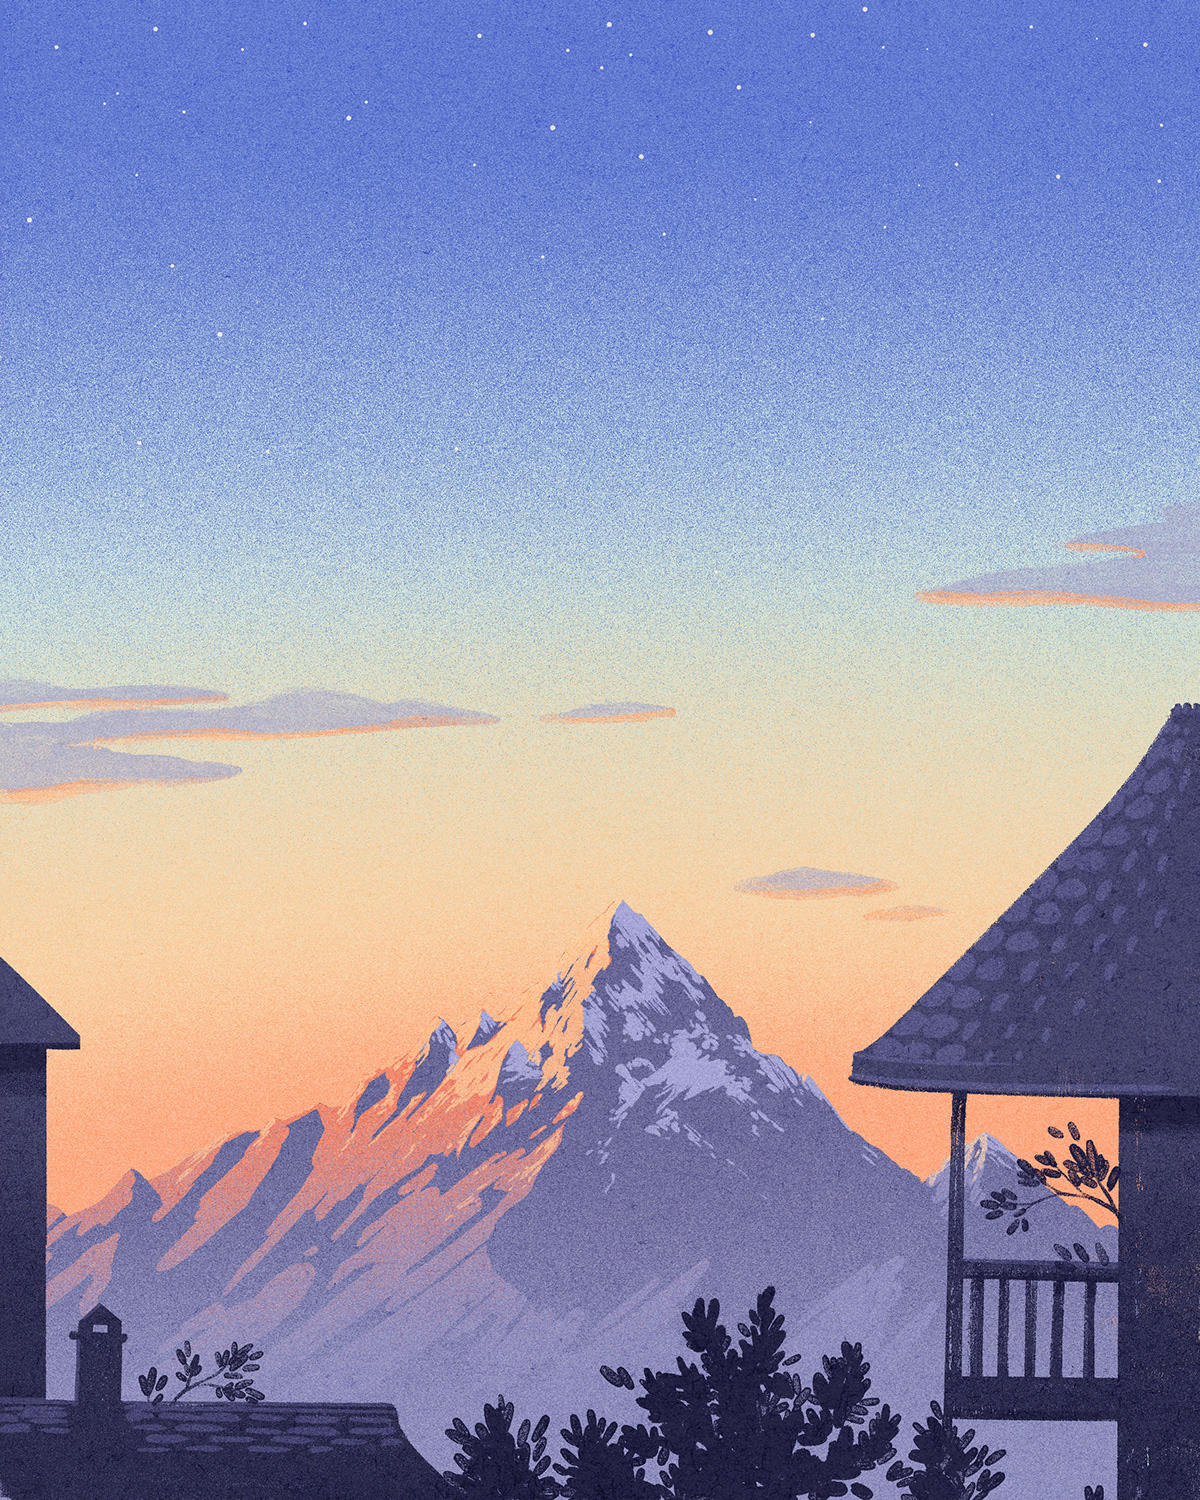 Landscape mountains vintage poster Poster Design vintage illustration alps ILLUSTRATION  magic realism